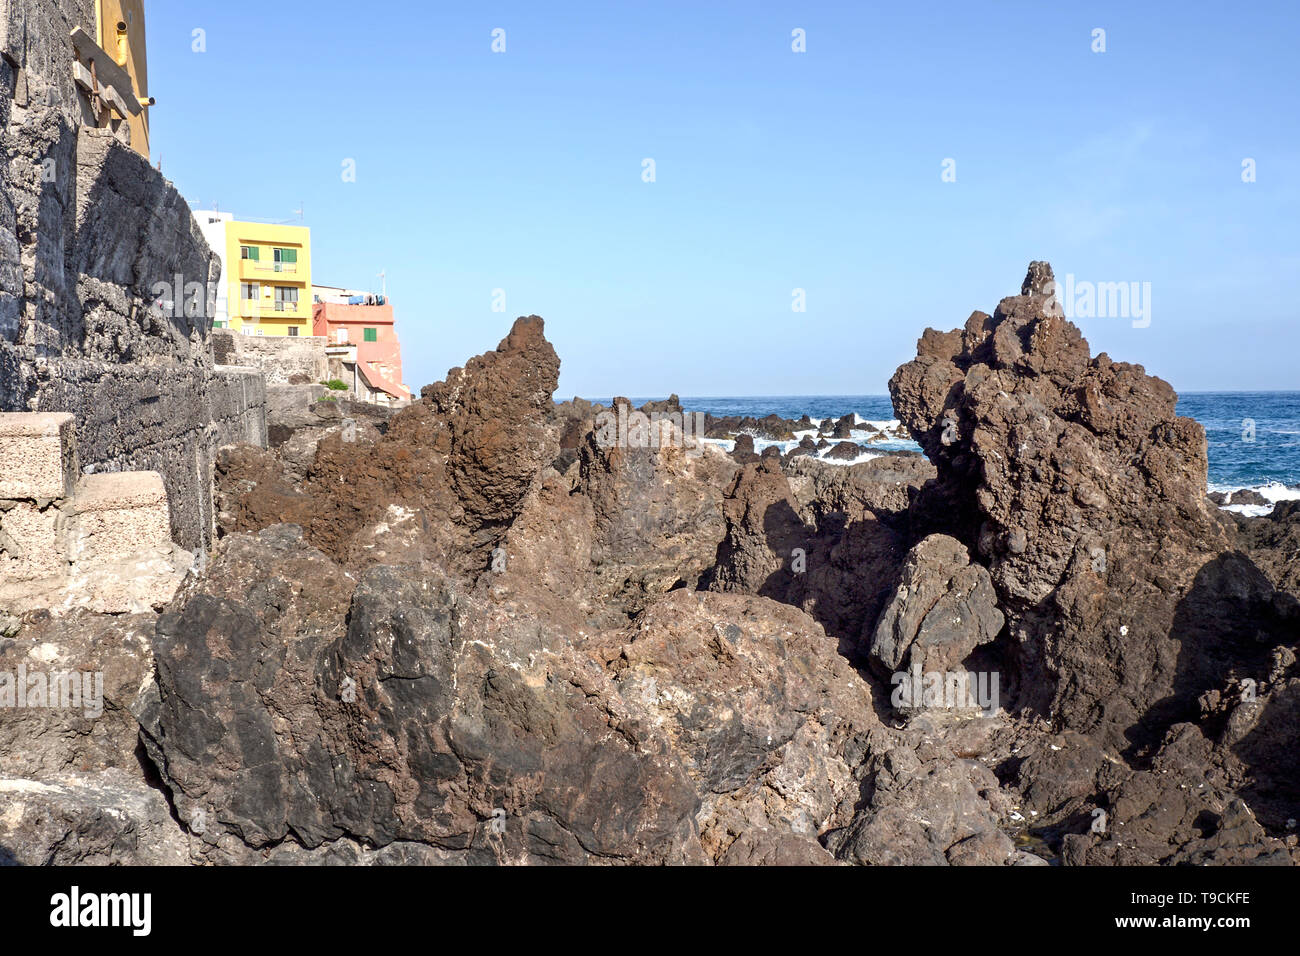 La forma stranamente nero pietre vulcaniche sulle rive dell'Atlantico a Punta Brava a Tenerife. Due case colorate sono sul lato sinistro, un p Foto Stock